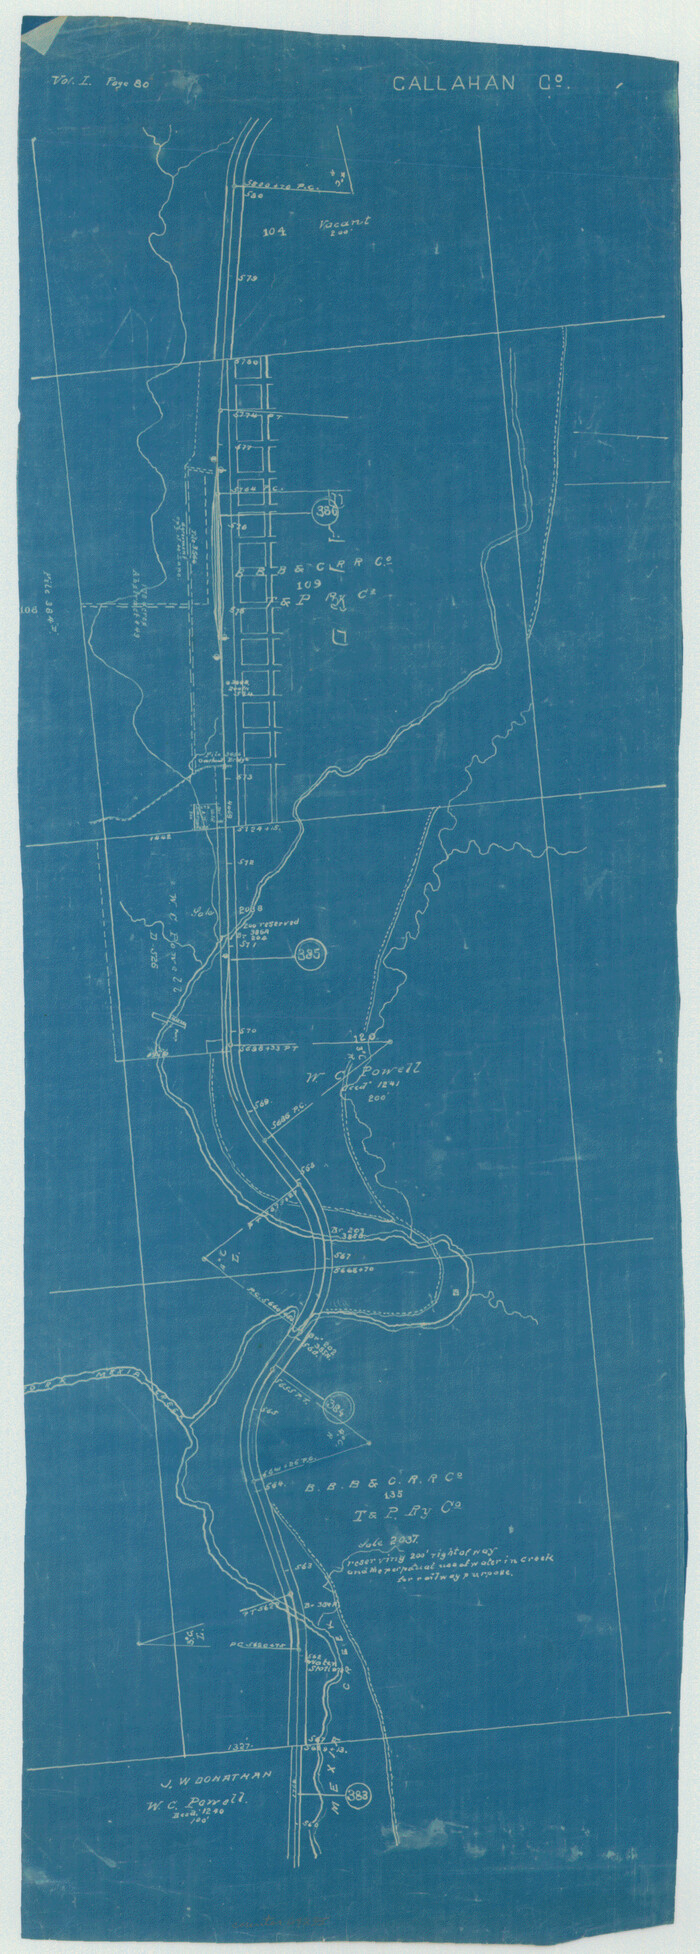 64235, [Texas & Pacific Railway through Callahan County], General Map Collection